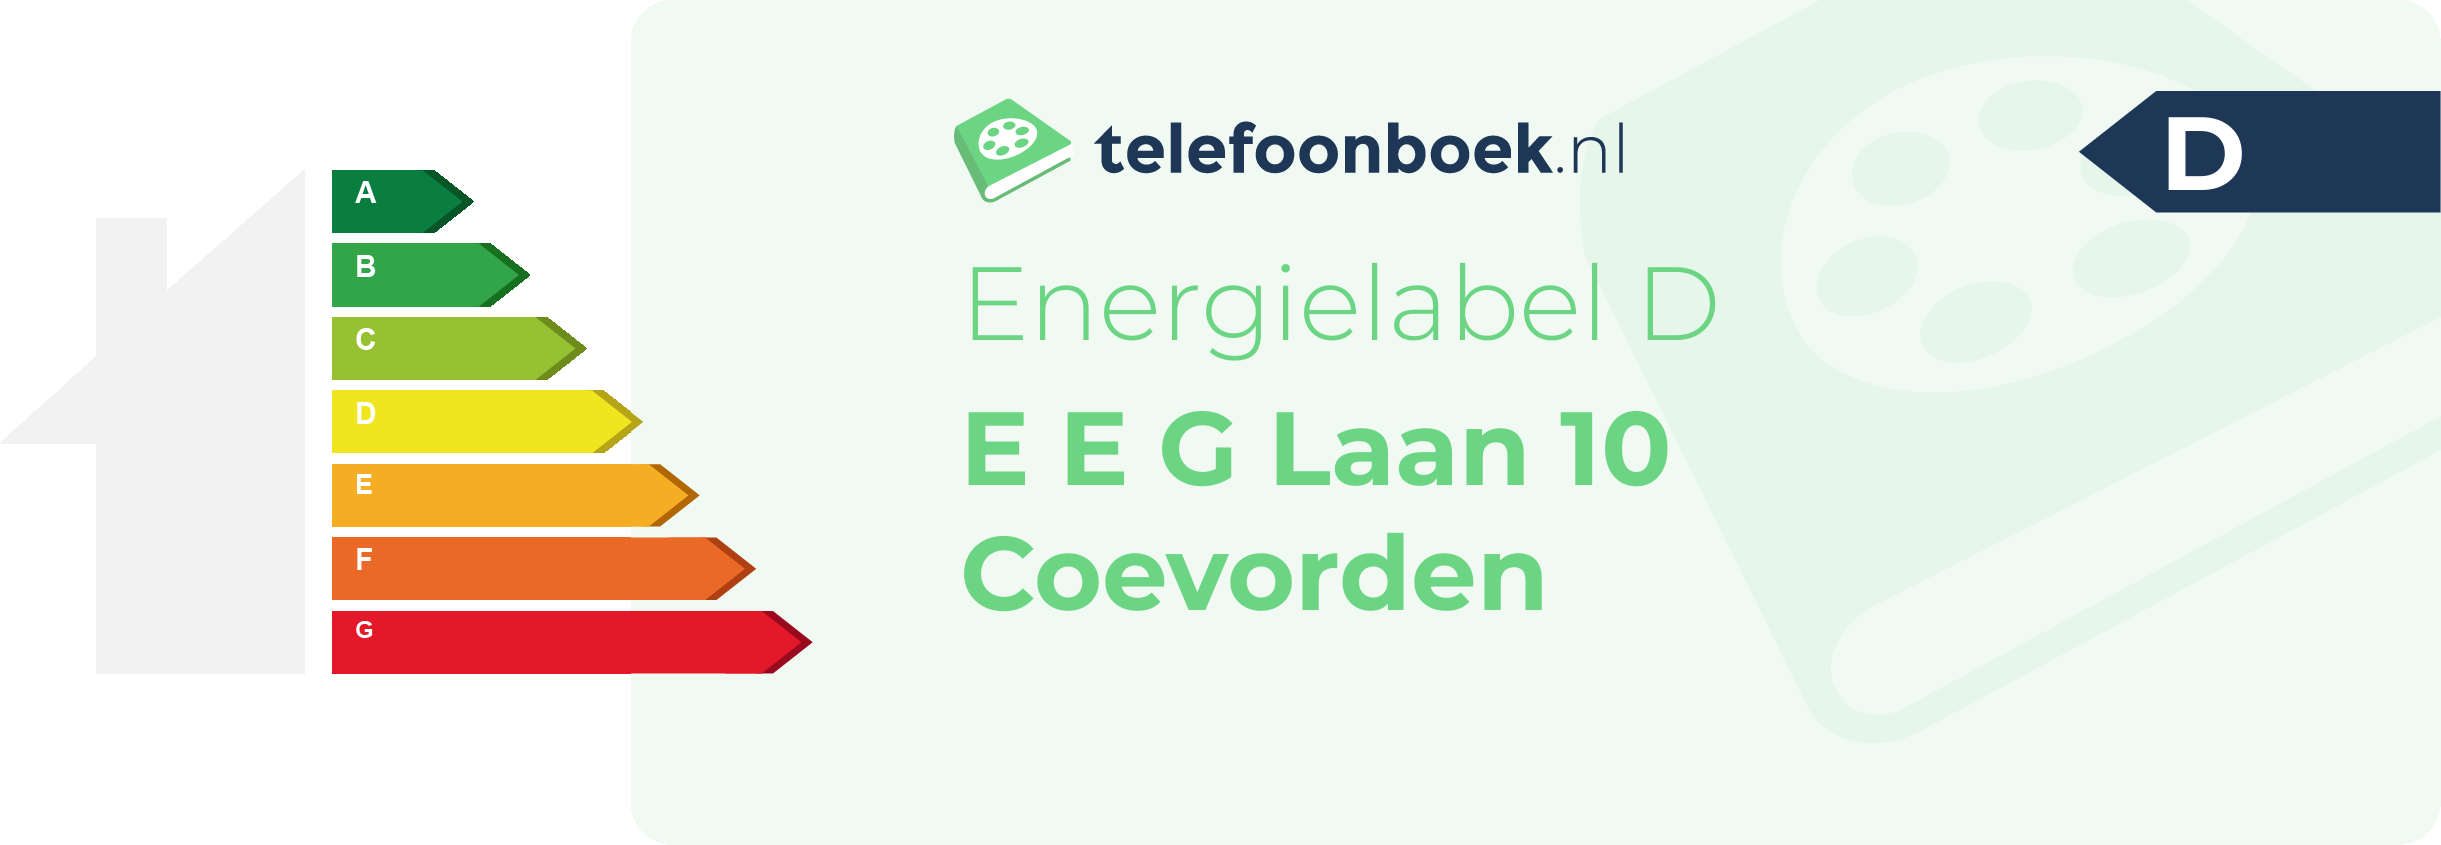 Energielabel E E G Laan 10 Coevorden